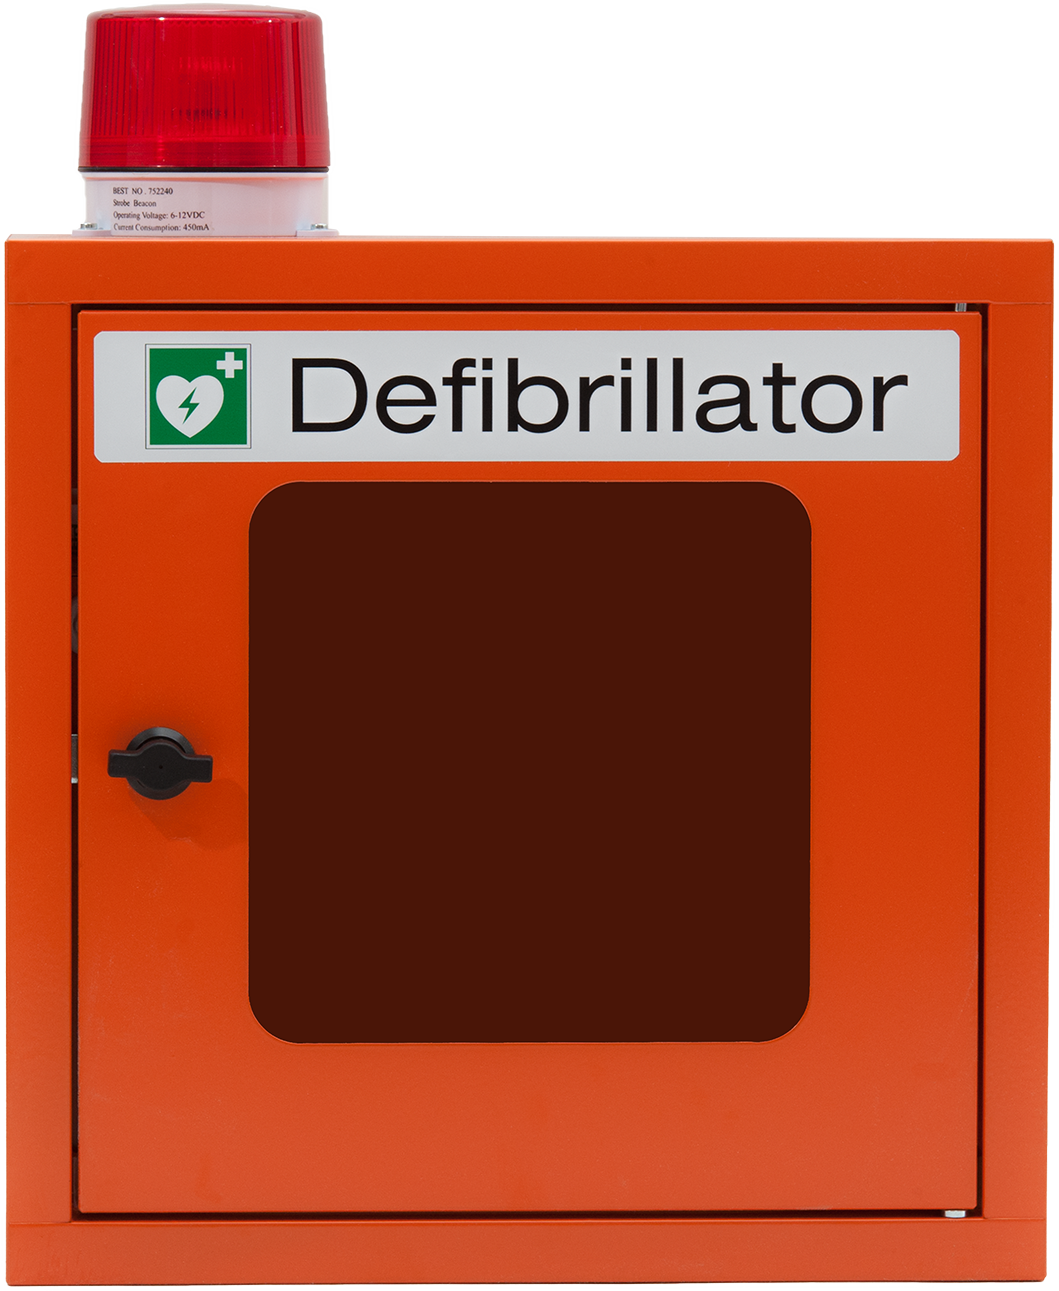 Wandkasten für Defibrillator, mit Alarm + Blitzleuchte